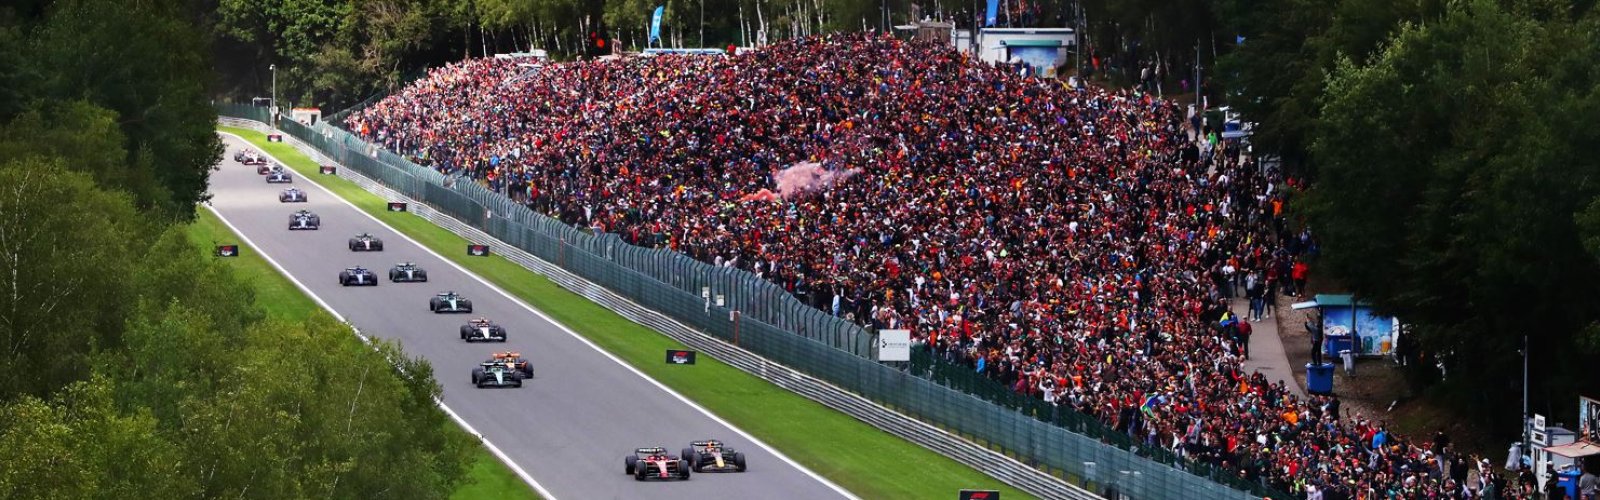 Formula 1 Belgium Grand Prix race at Circuit de Spa-Francorchamps